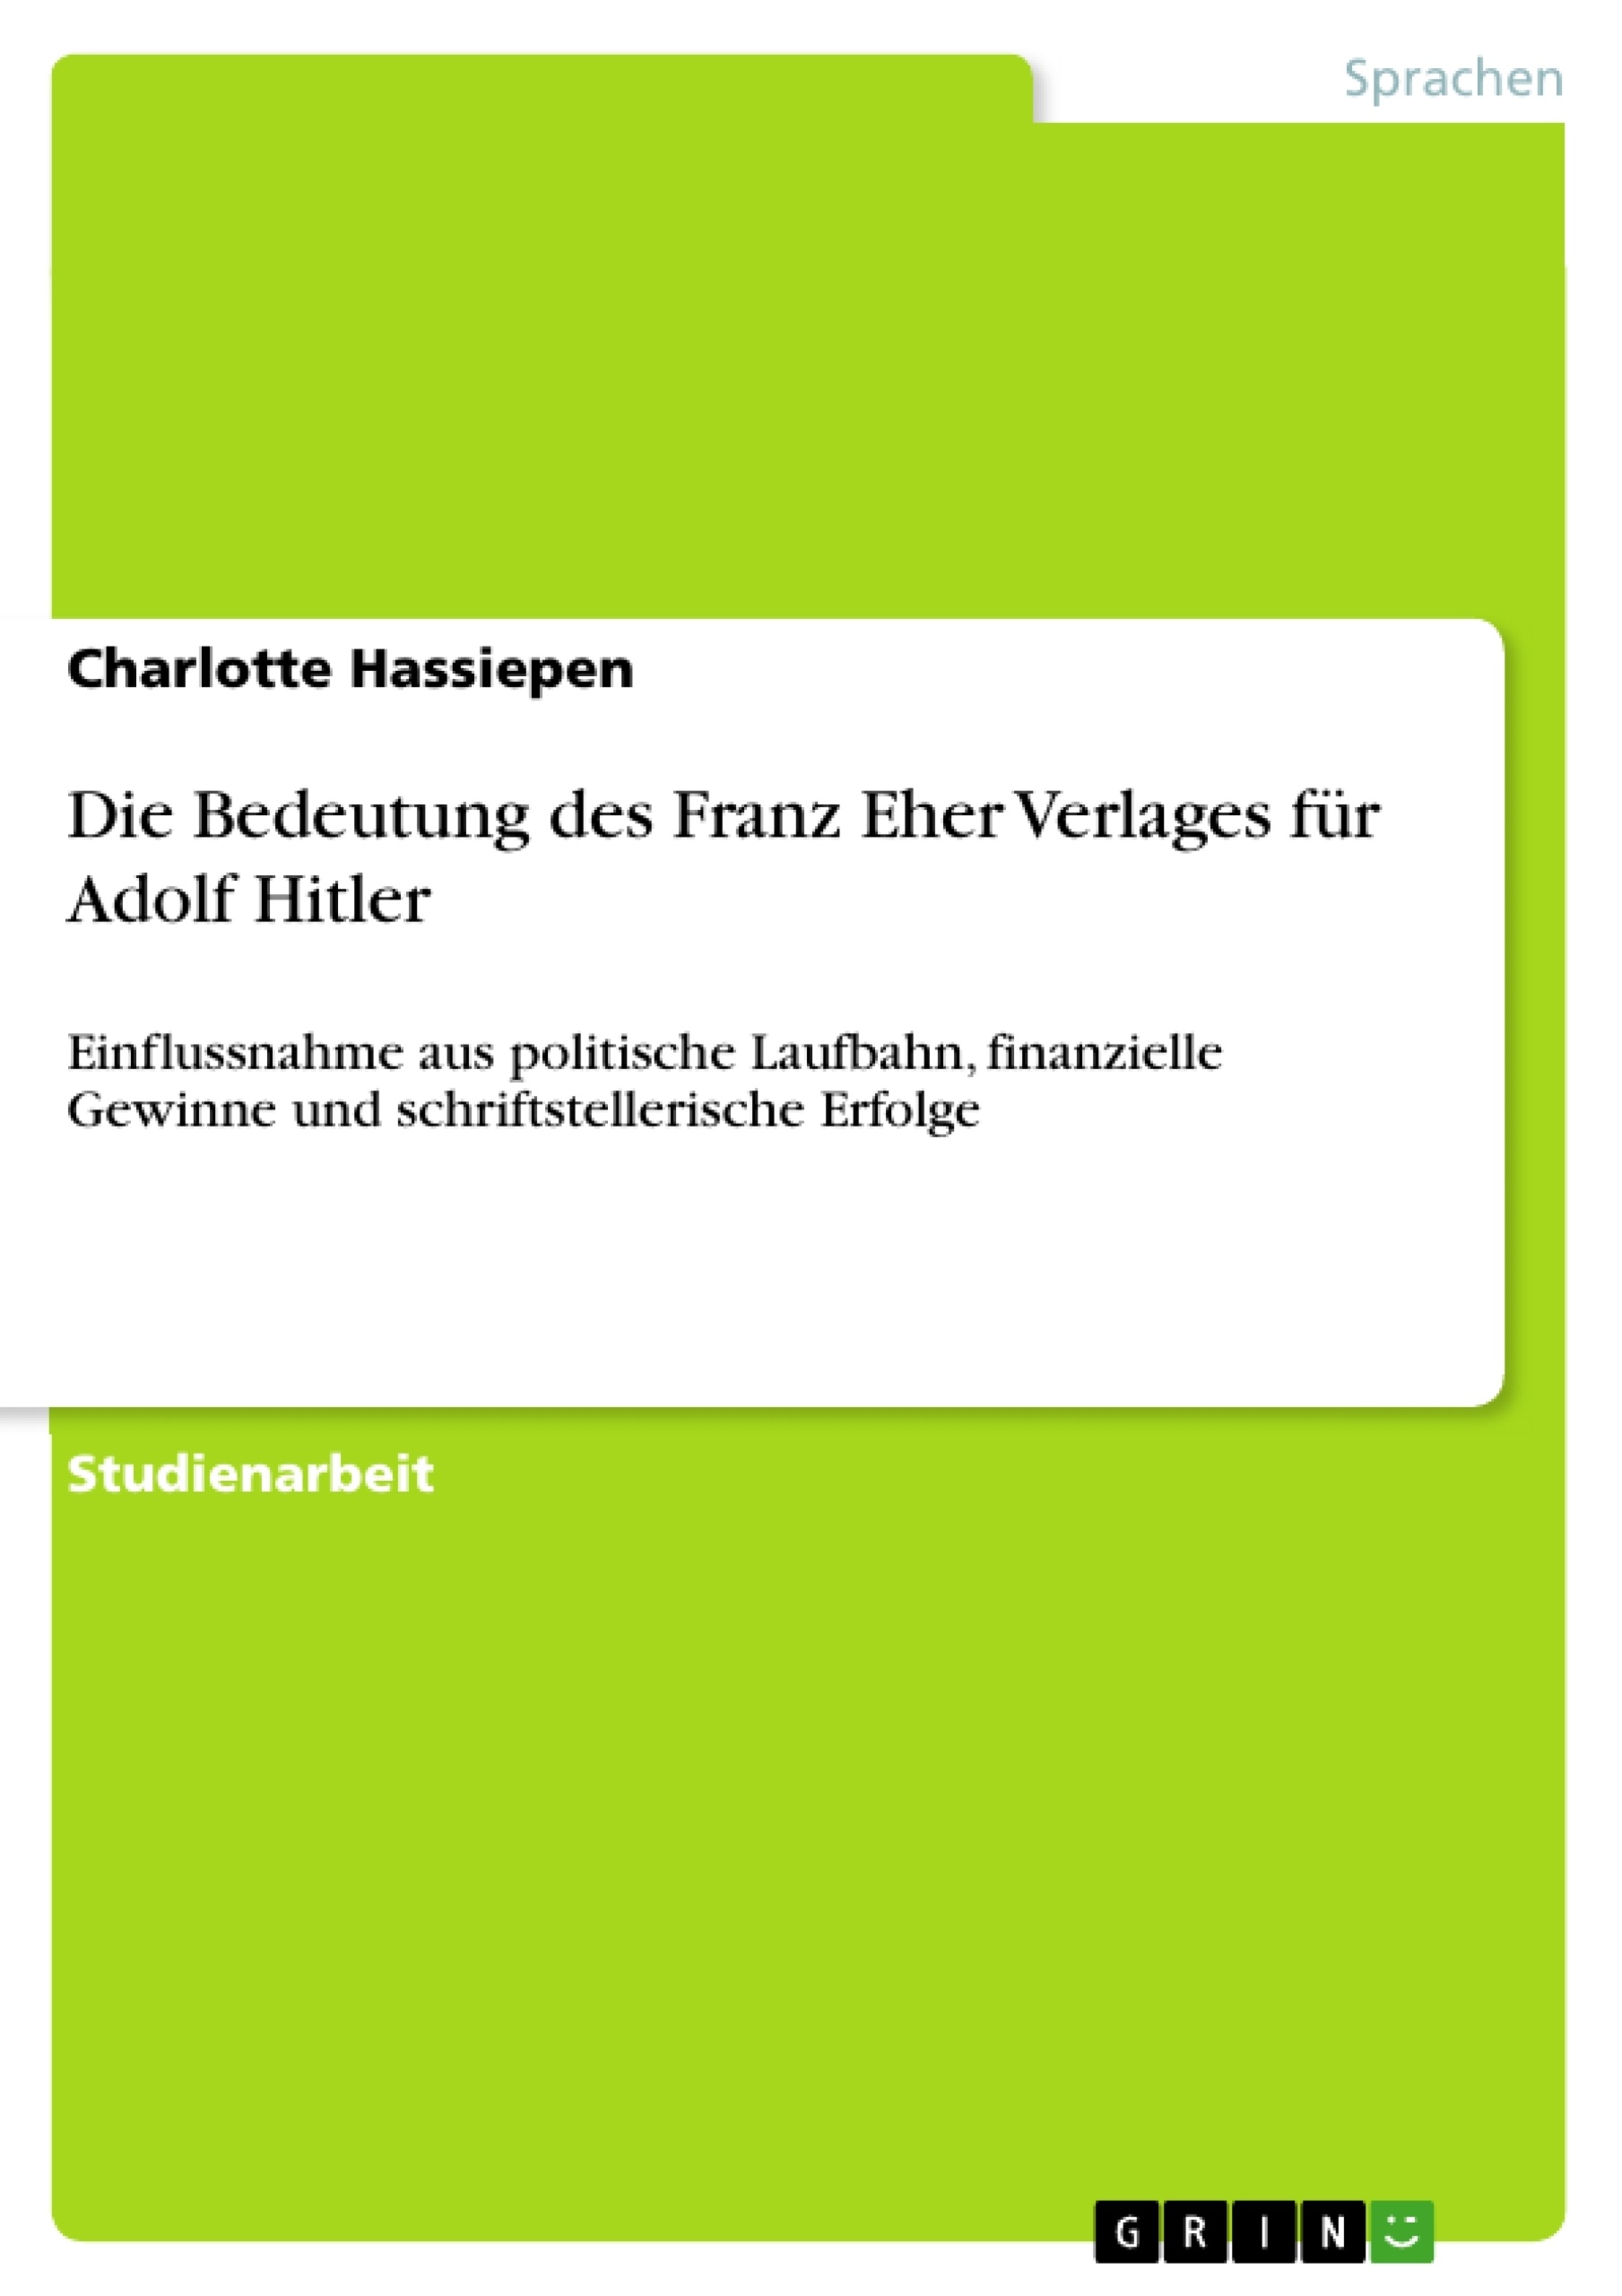 Title: Die Bedeutung des Franz Eher Verlages für Adolf Hitler